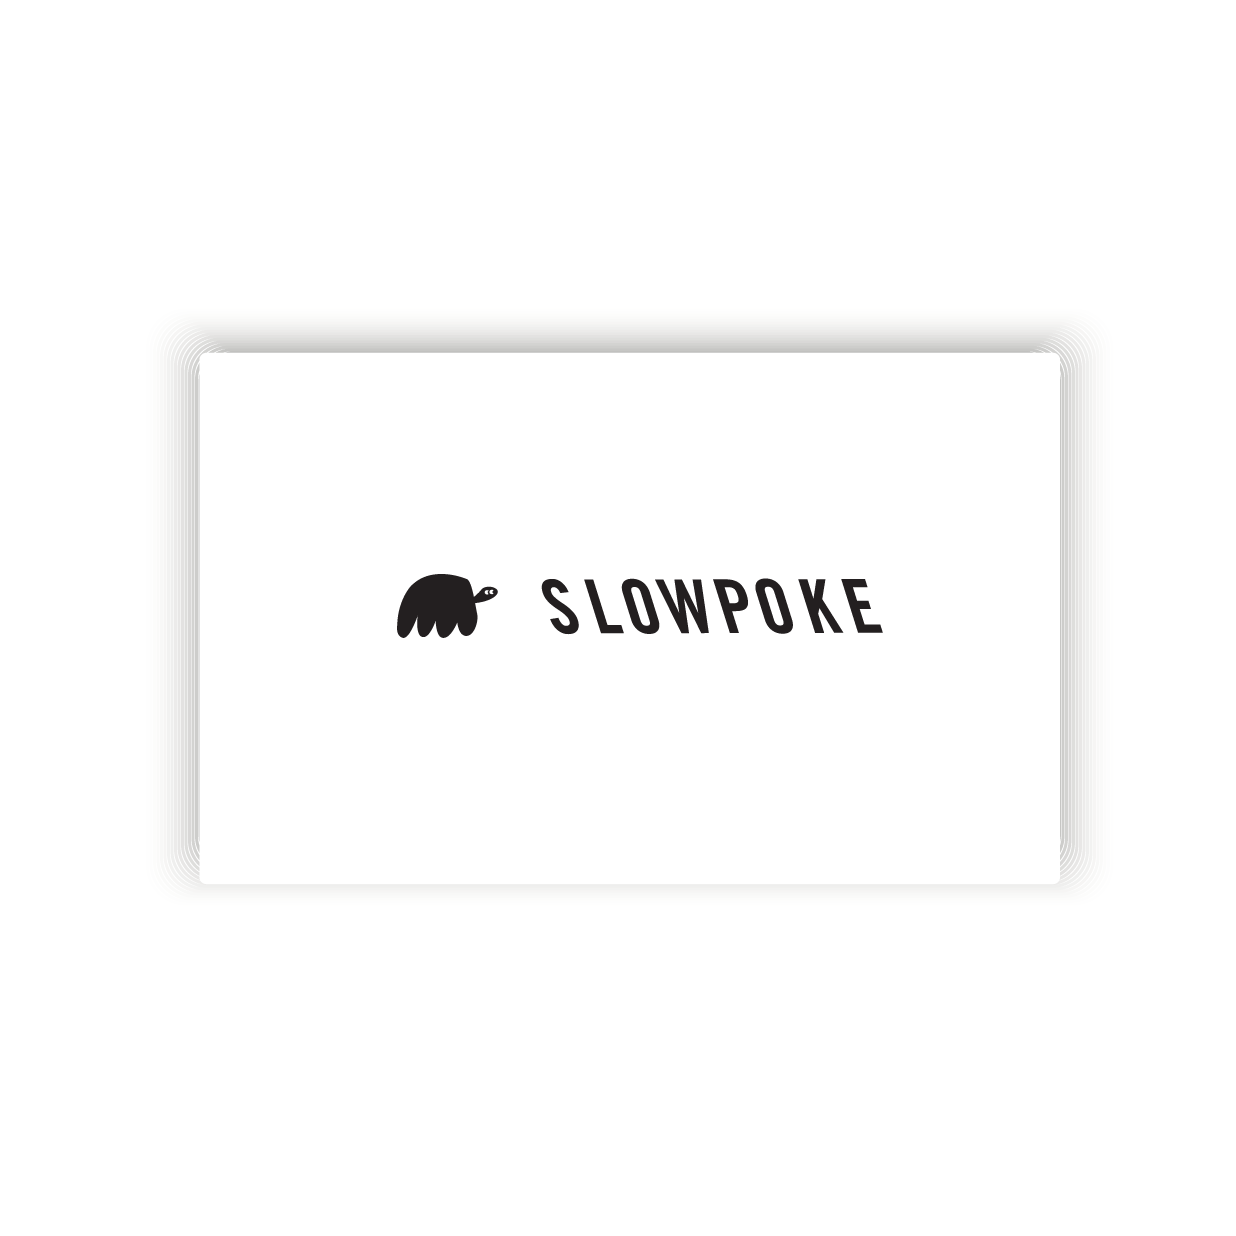 Slowpoke gift card